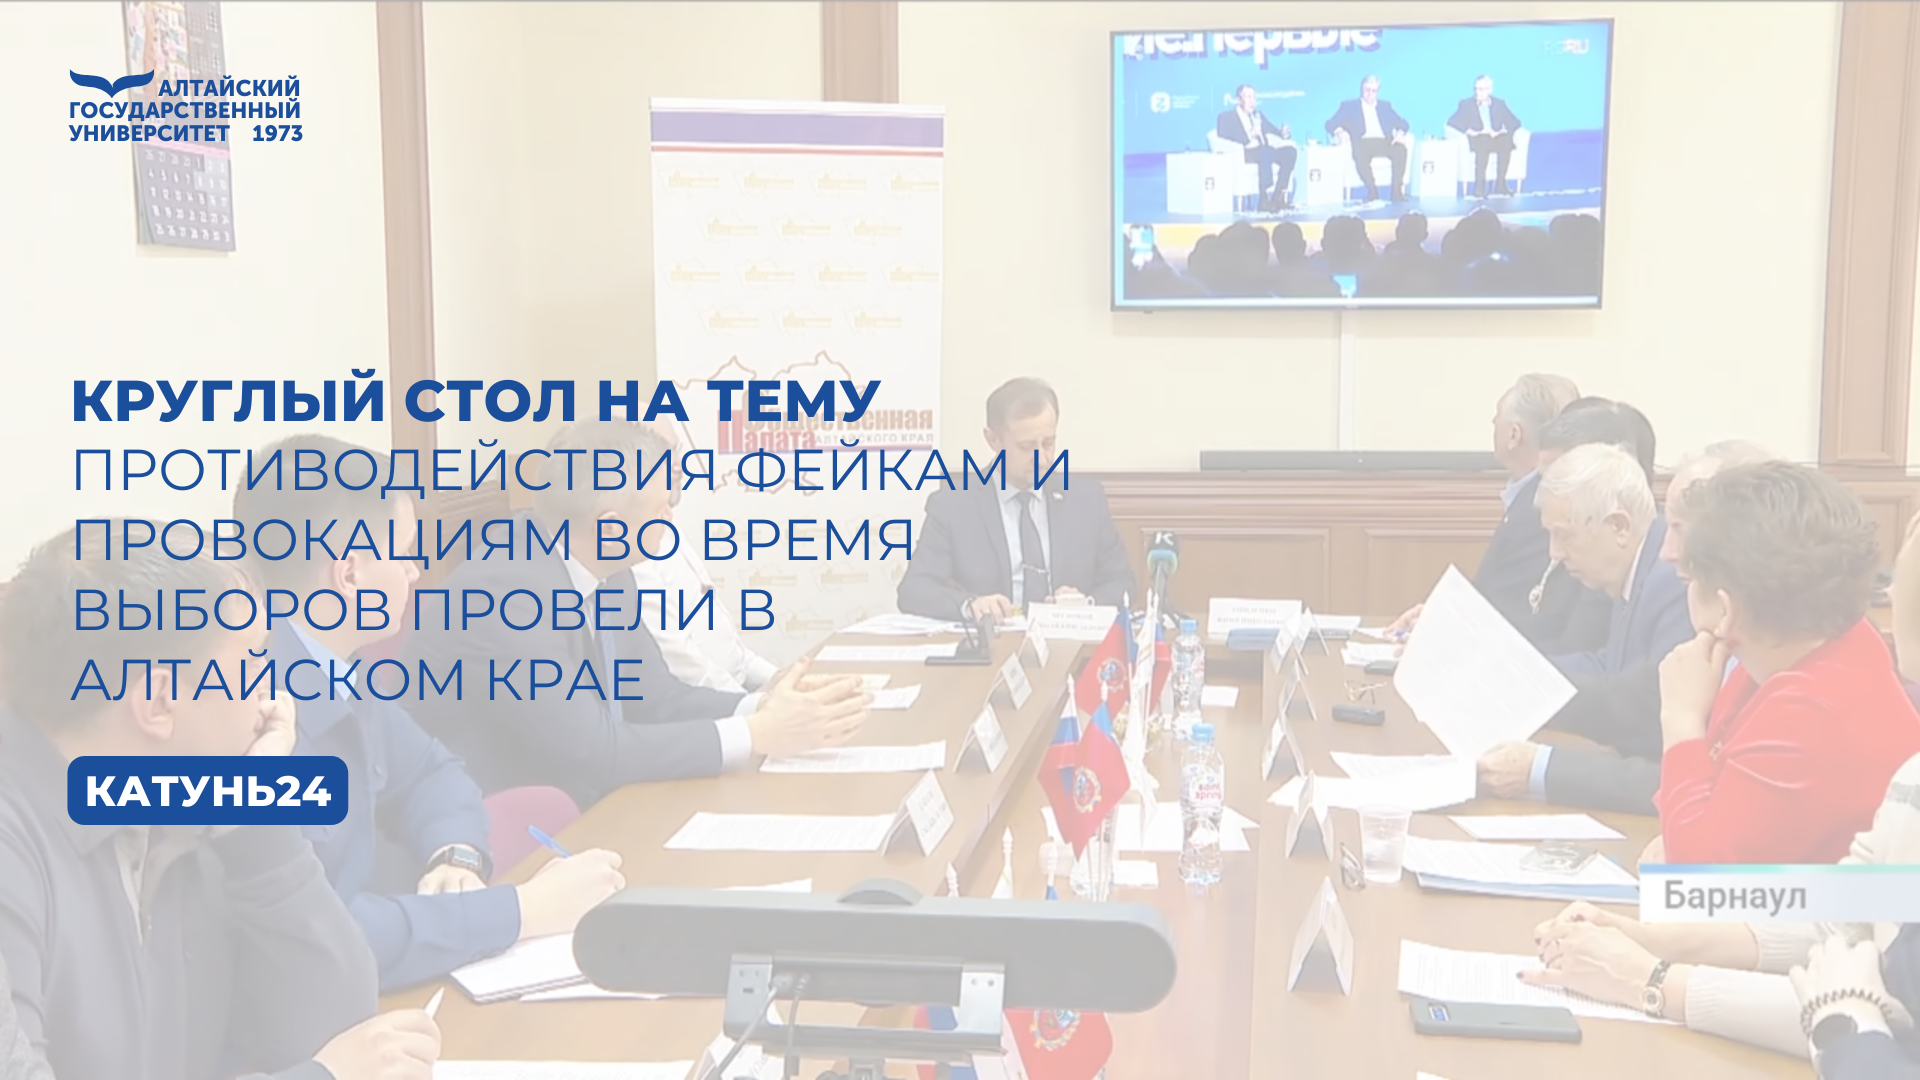 Круглый стол на тему противодействия фейкам и провокациям во время выборов провели в Алтайском крае